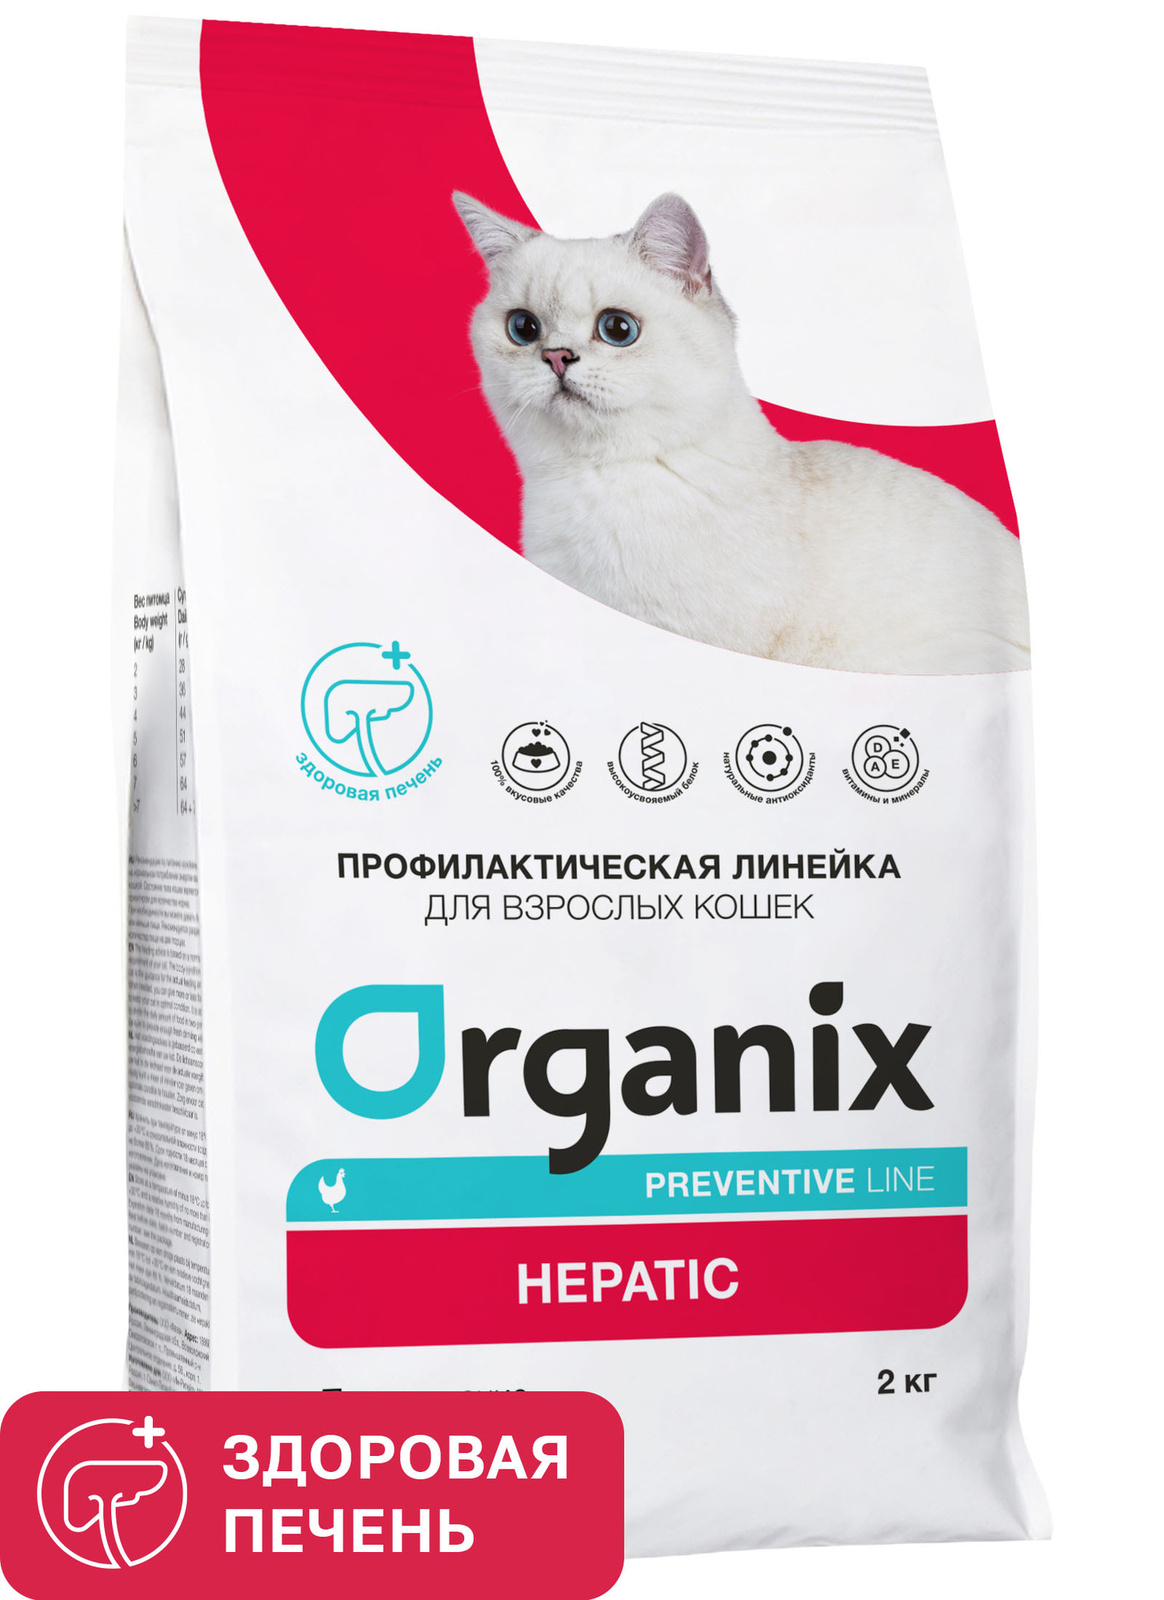 Organix Preventive Line Organix Preventive Line hepatic сухой корм для кошек Поддержание здоровья печени (2 кг)